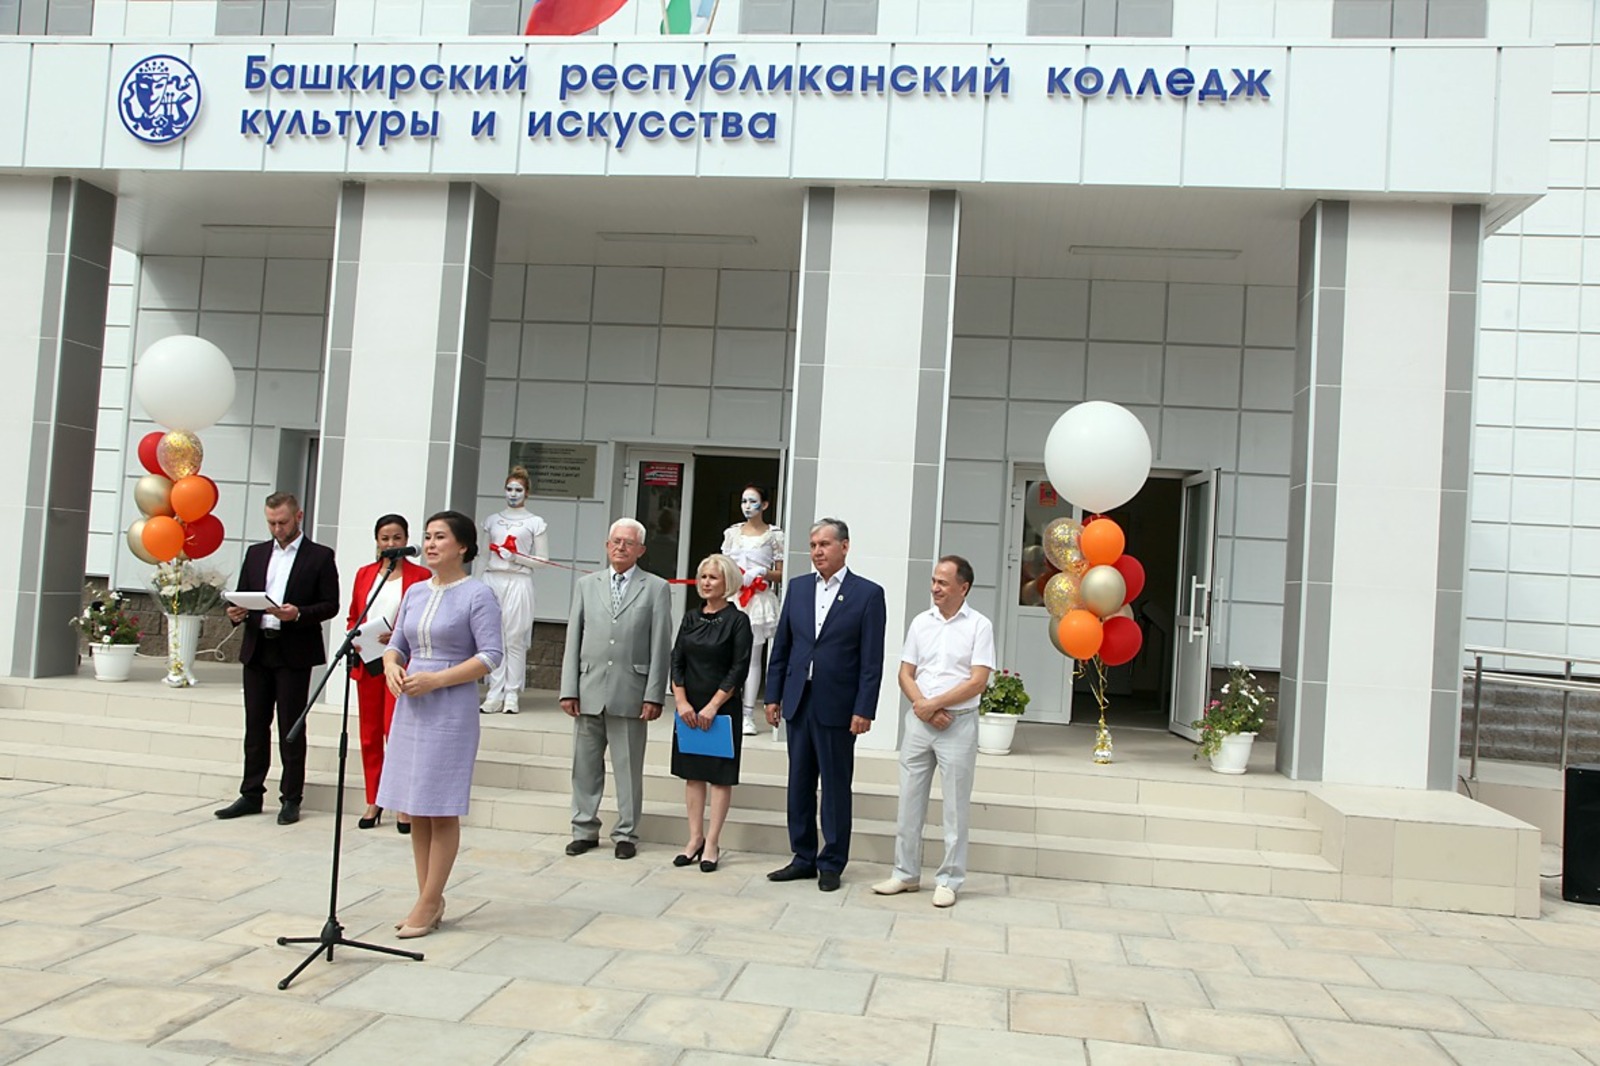 Министр культуры РБ Амина Шафикова открыла обновлённый корпус Башкирского республиканского колледжа культуры и искусства